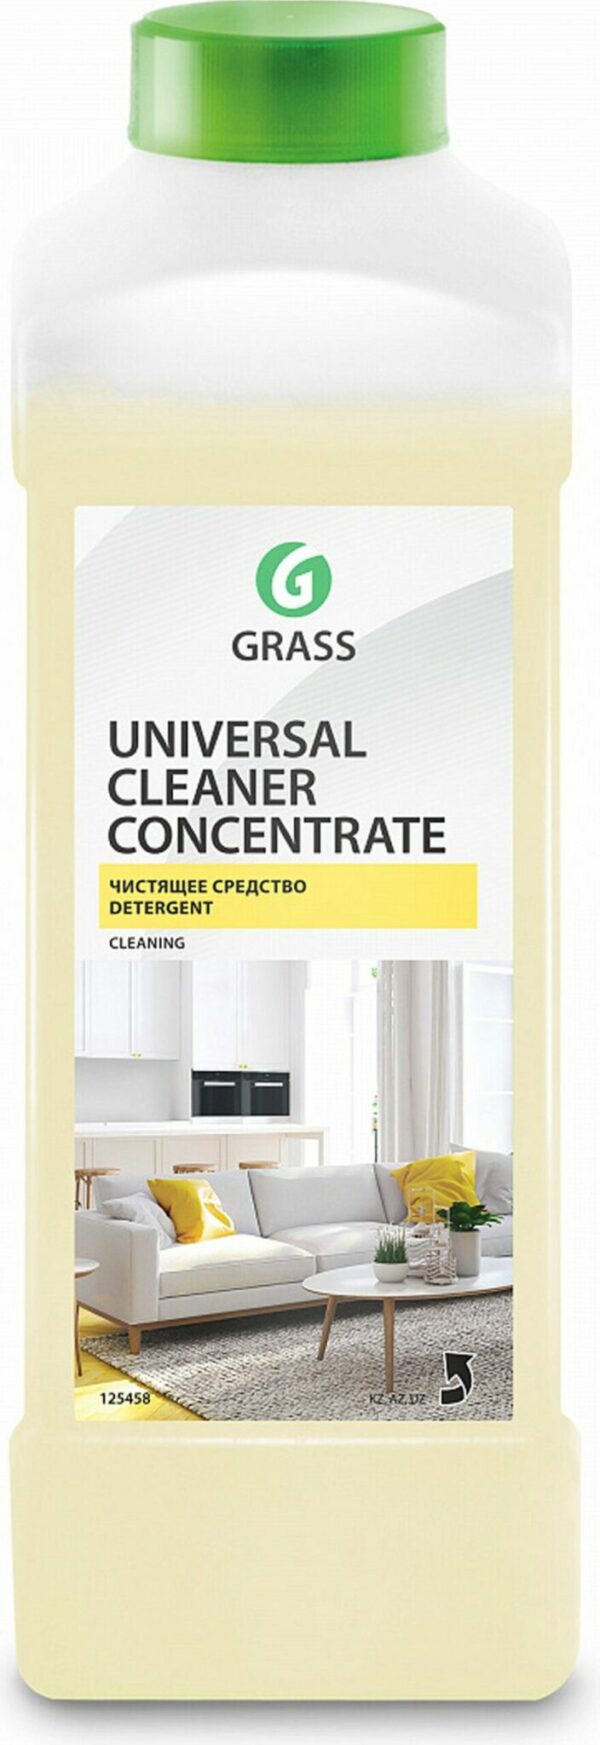 Средство чистящее универсальное GRASS Universal Cleaner Concentrate 1 л (125458) купить в сети строительных магазинов Мастак